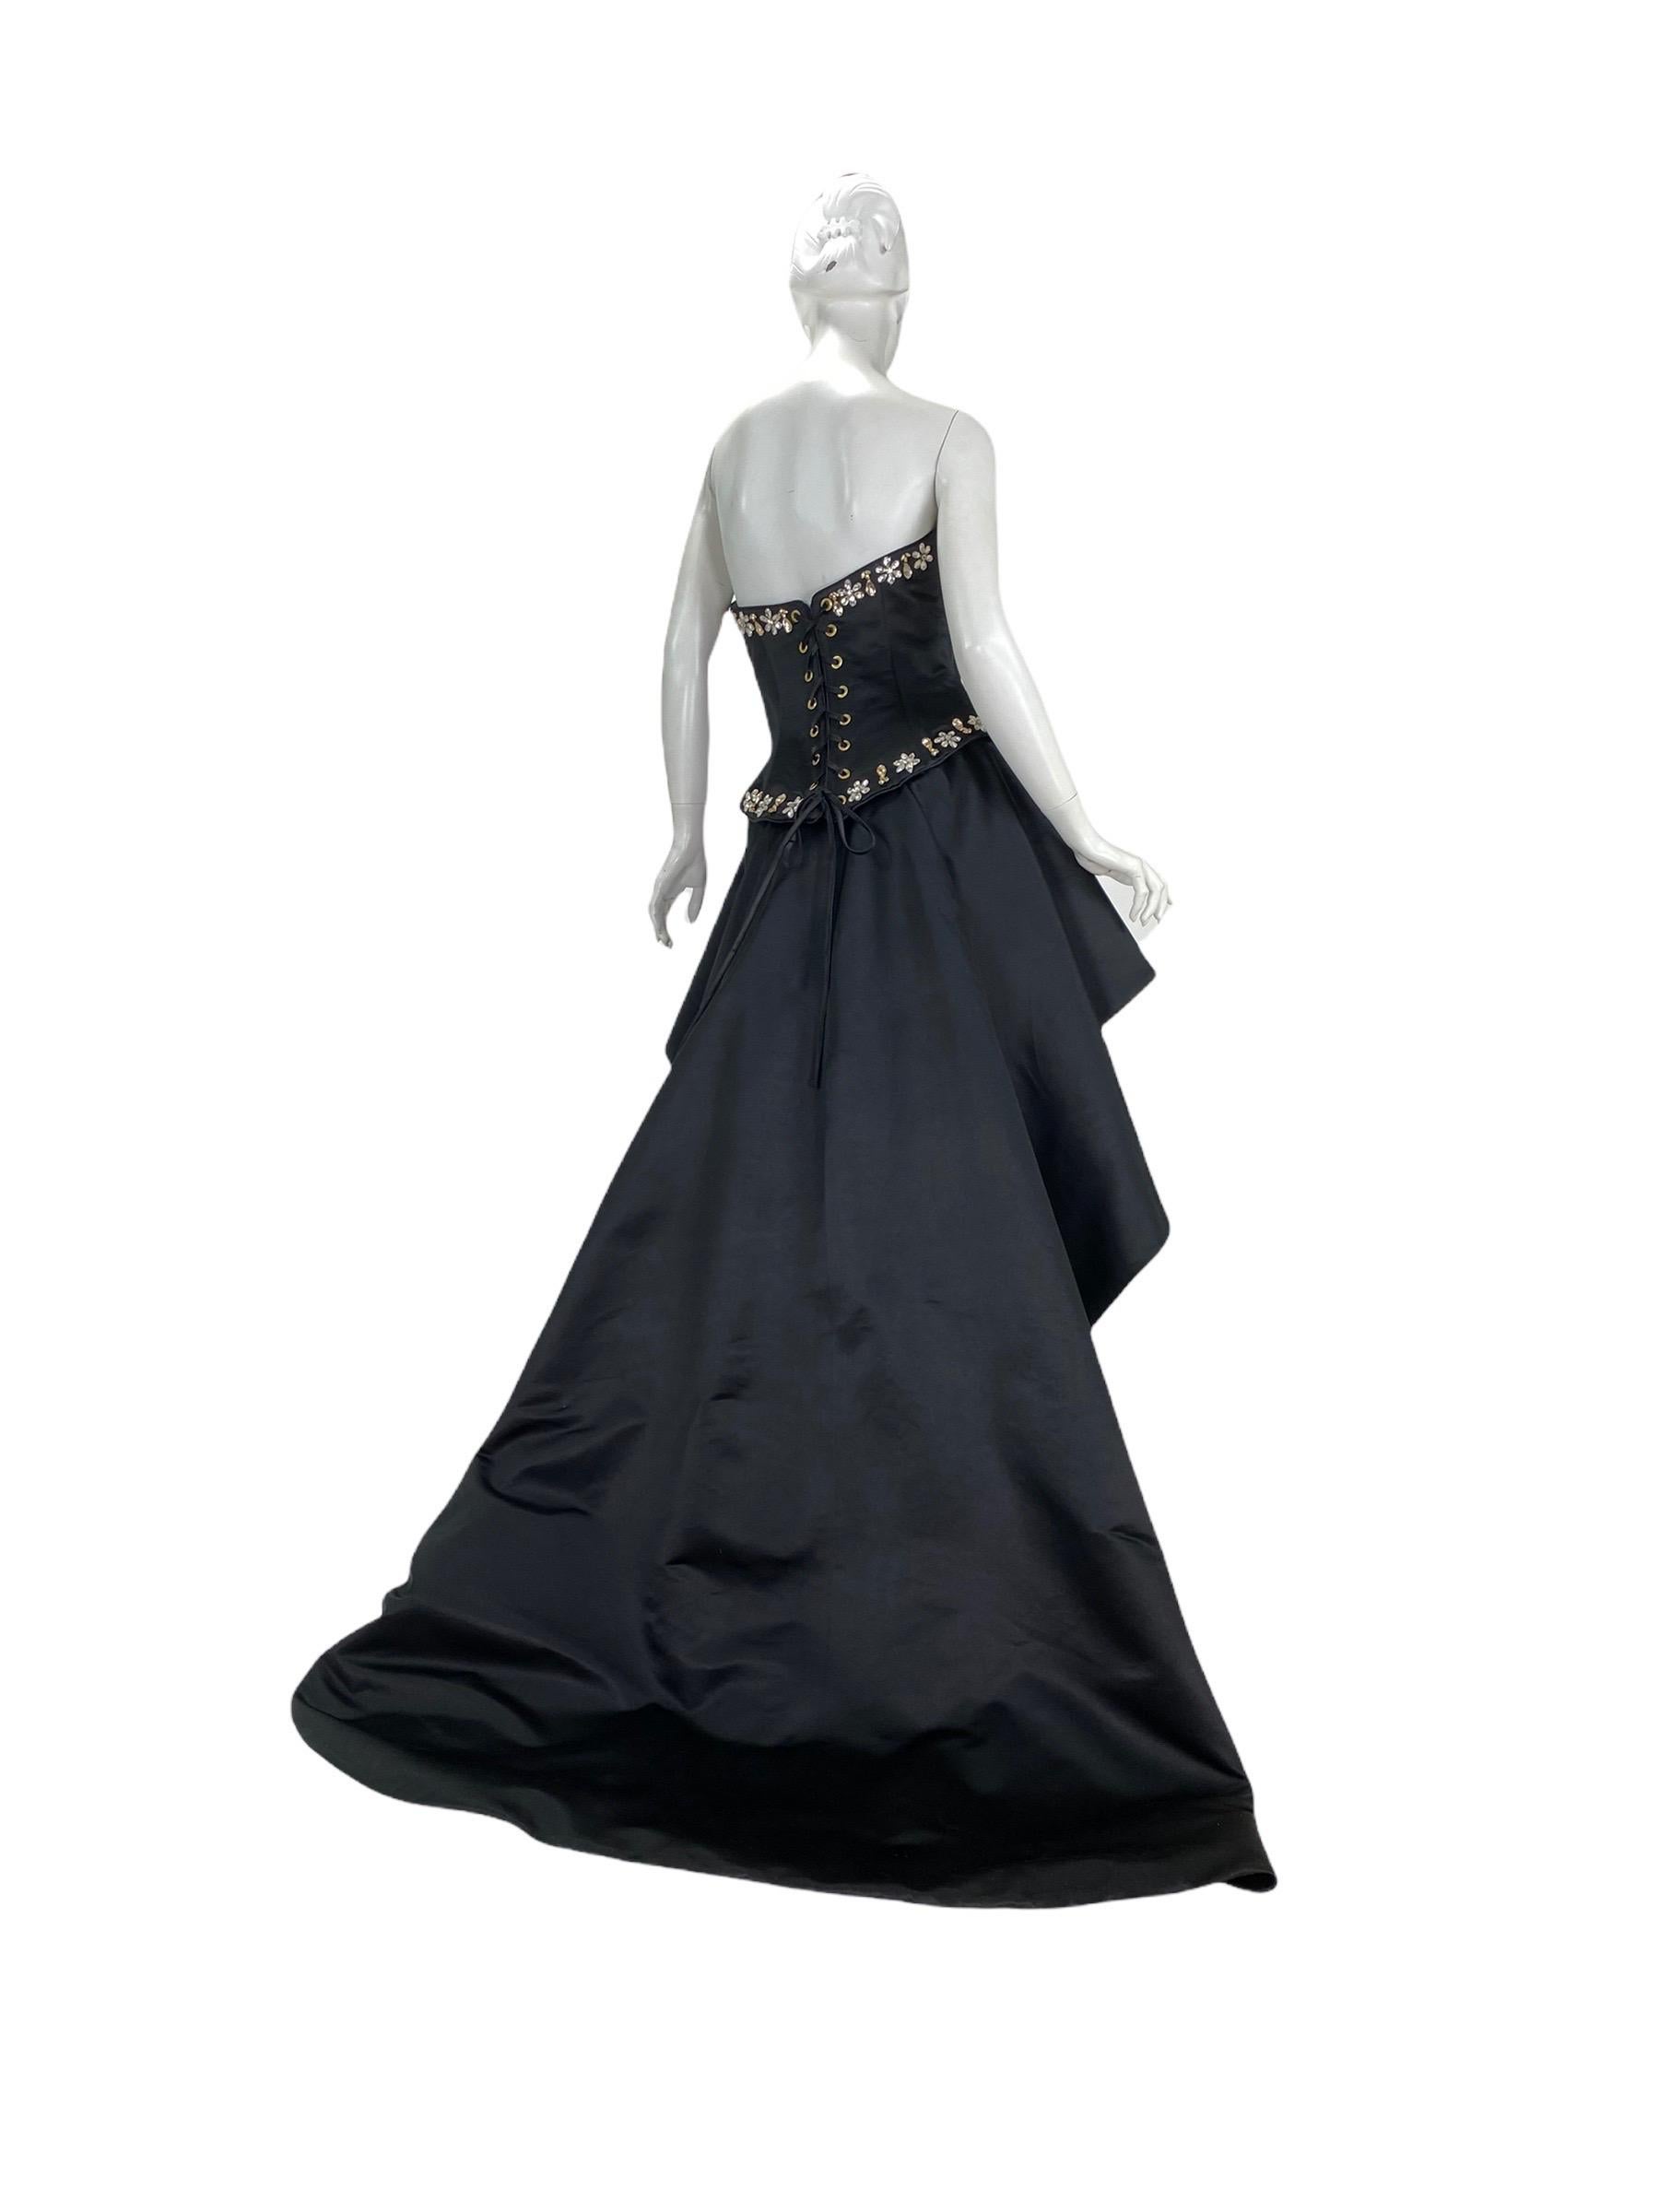 Shahla Dorriz for Natalie Cole Custom Made Crystal Embellished Gown For Sale 1